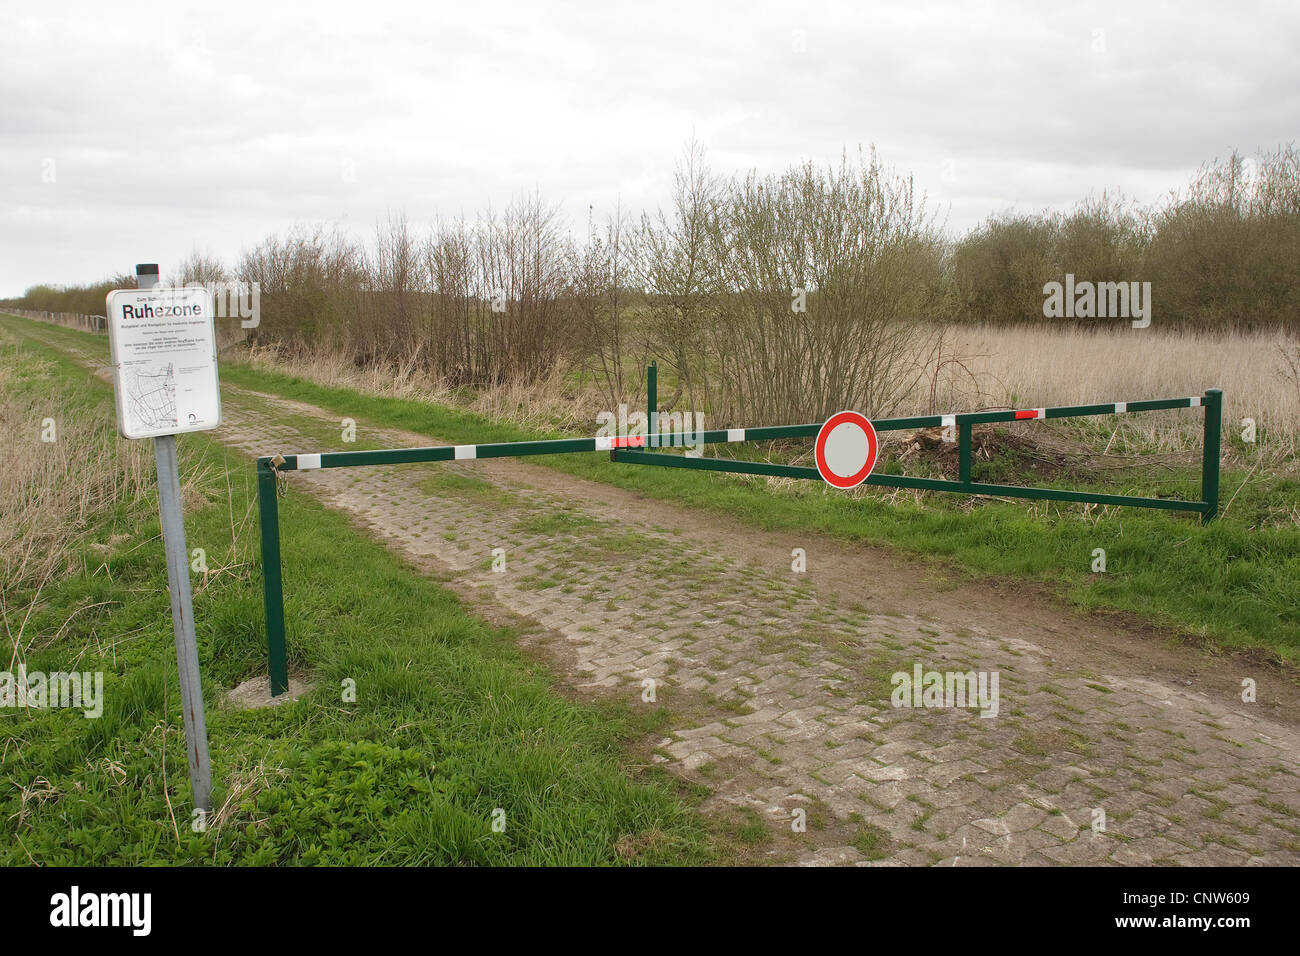 Barrera en un camino pavimentado en una zona de cría de pradera, Alemania Foto de stock